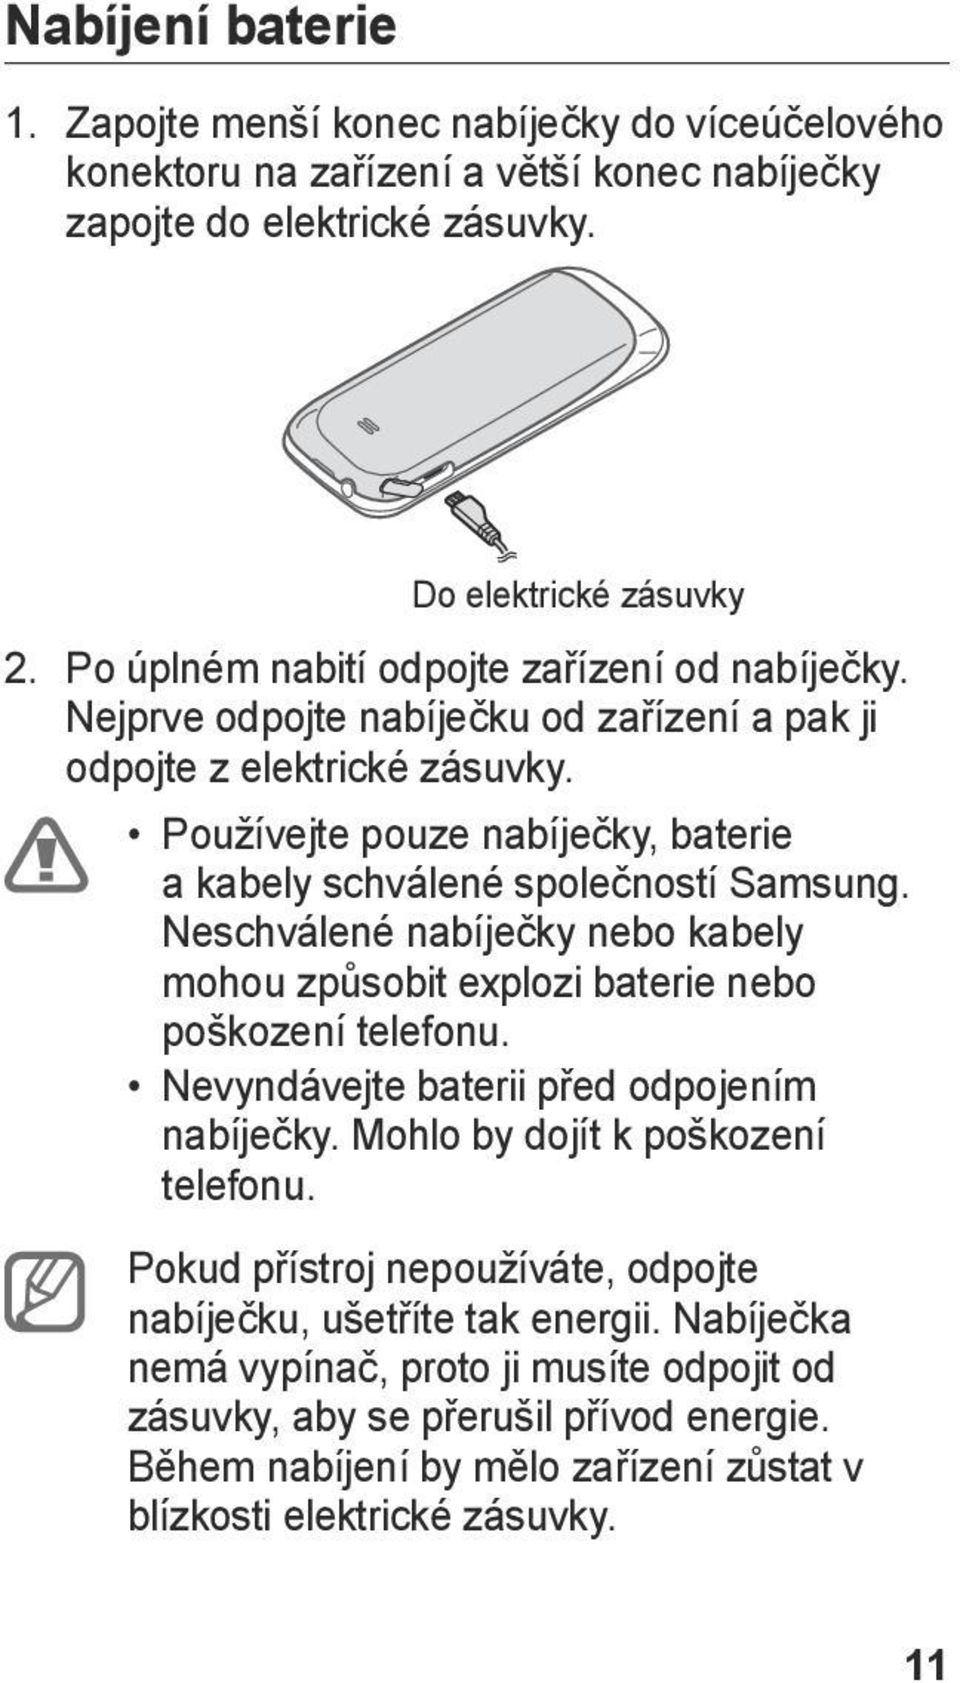 Používejte pouze nabíječky, baterie a kabely schválené společností Samsung. Neschválené nabíječky nebo kabely mohou způsobit explozi baterie nebo poškození telefonu.